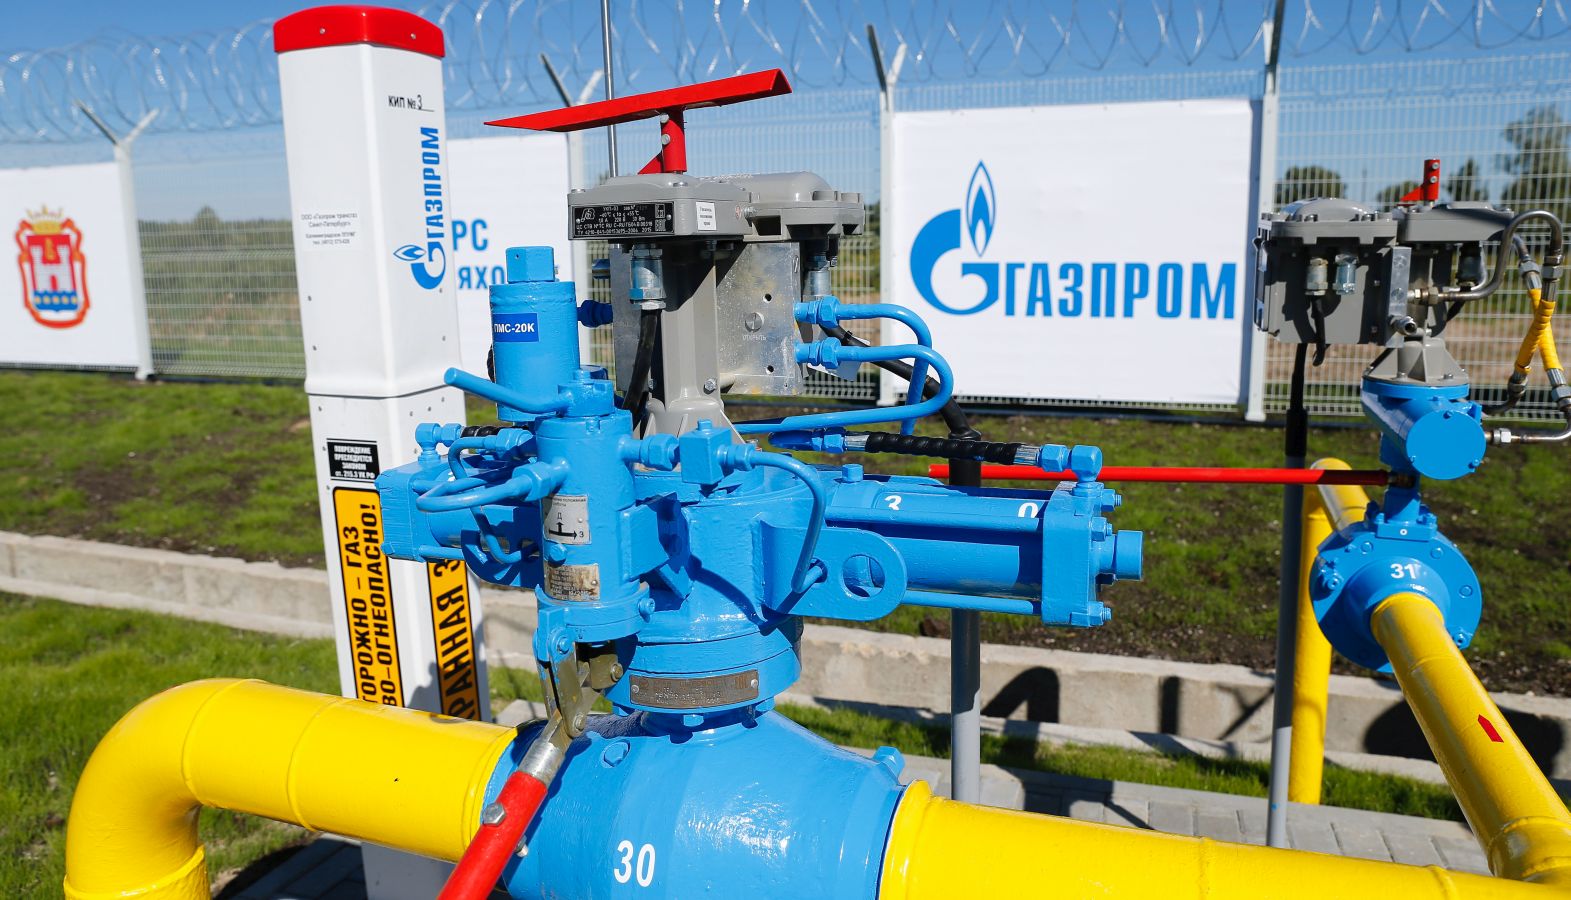 Европа хочет покупать российский газ за рубли? - фото 3